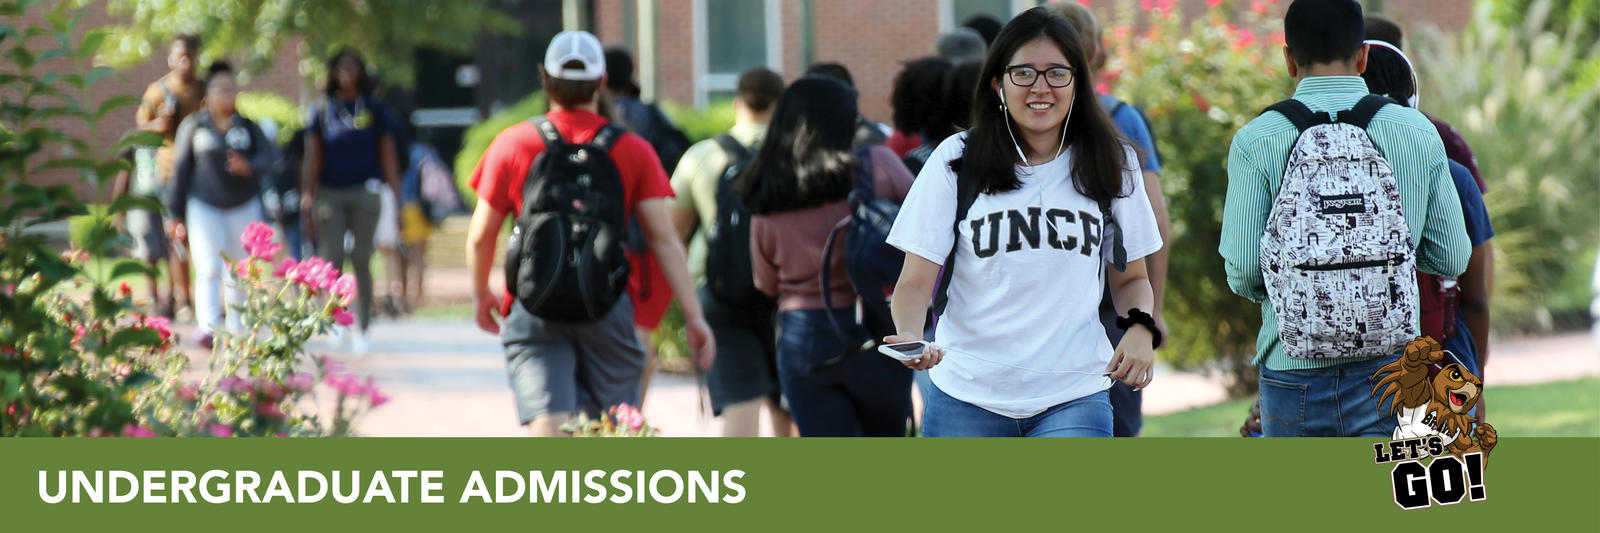 Visiting UNCP! | The University of North Carolina at Pembroke